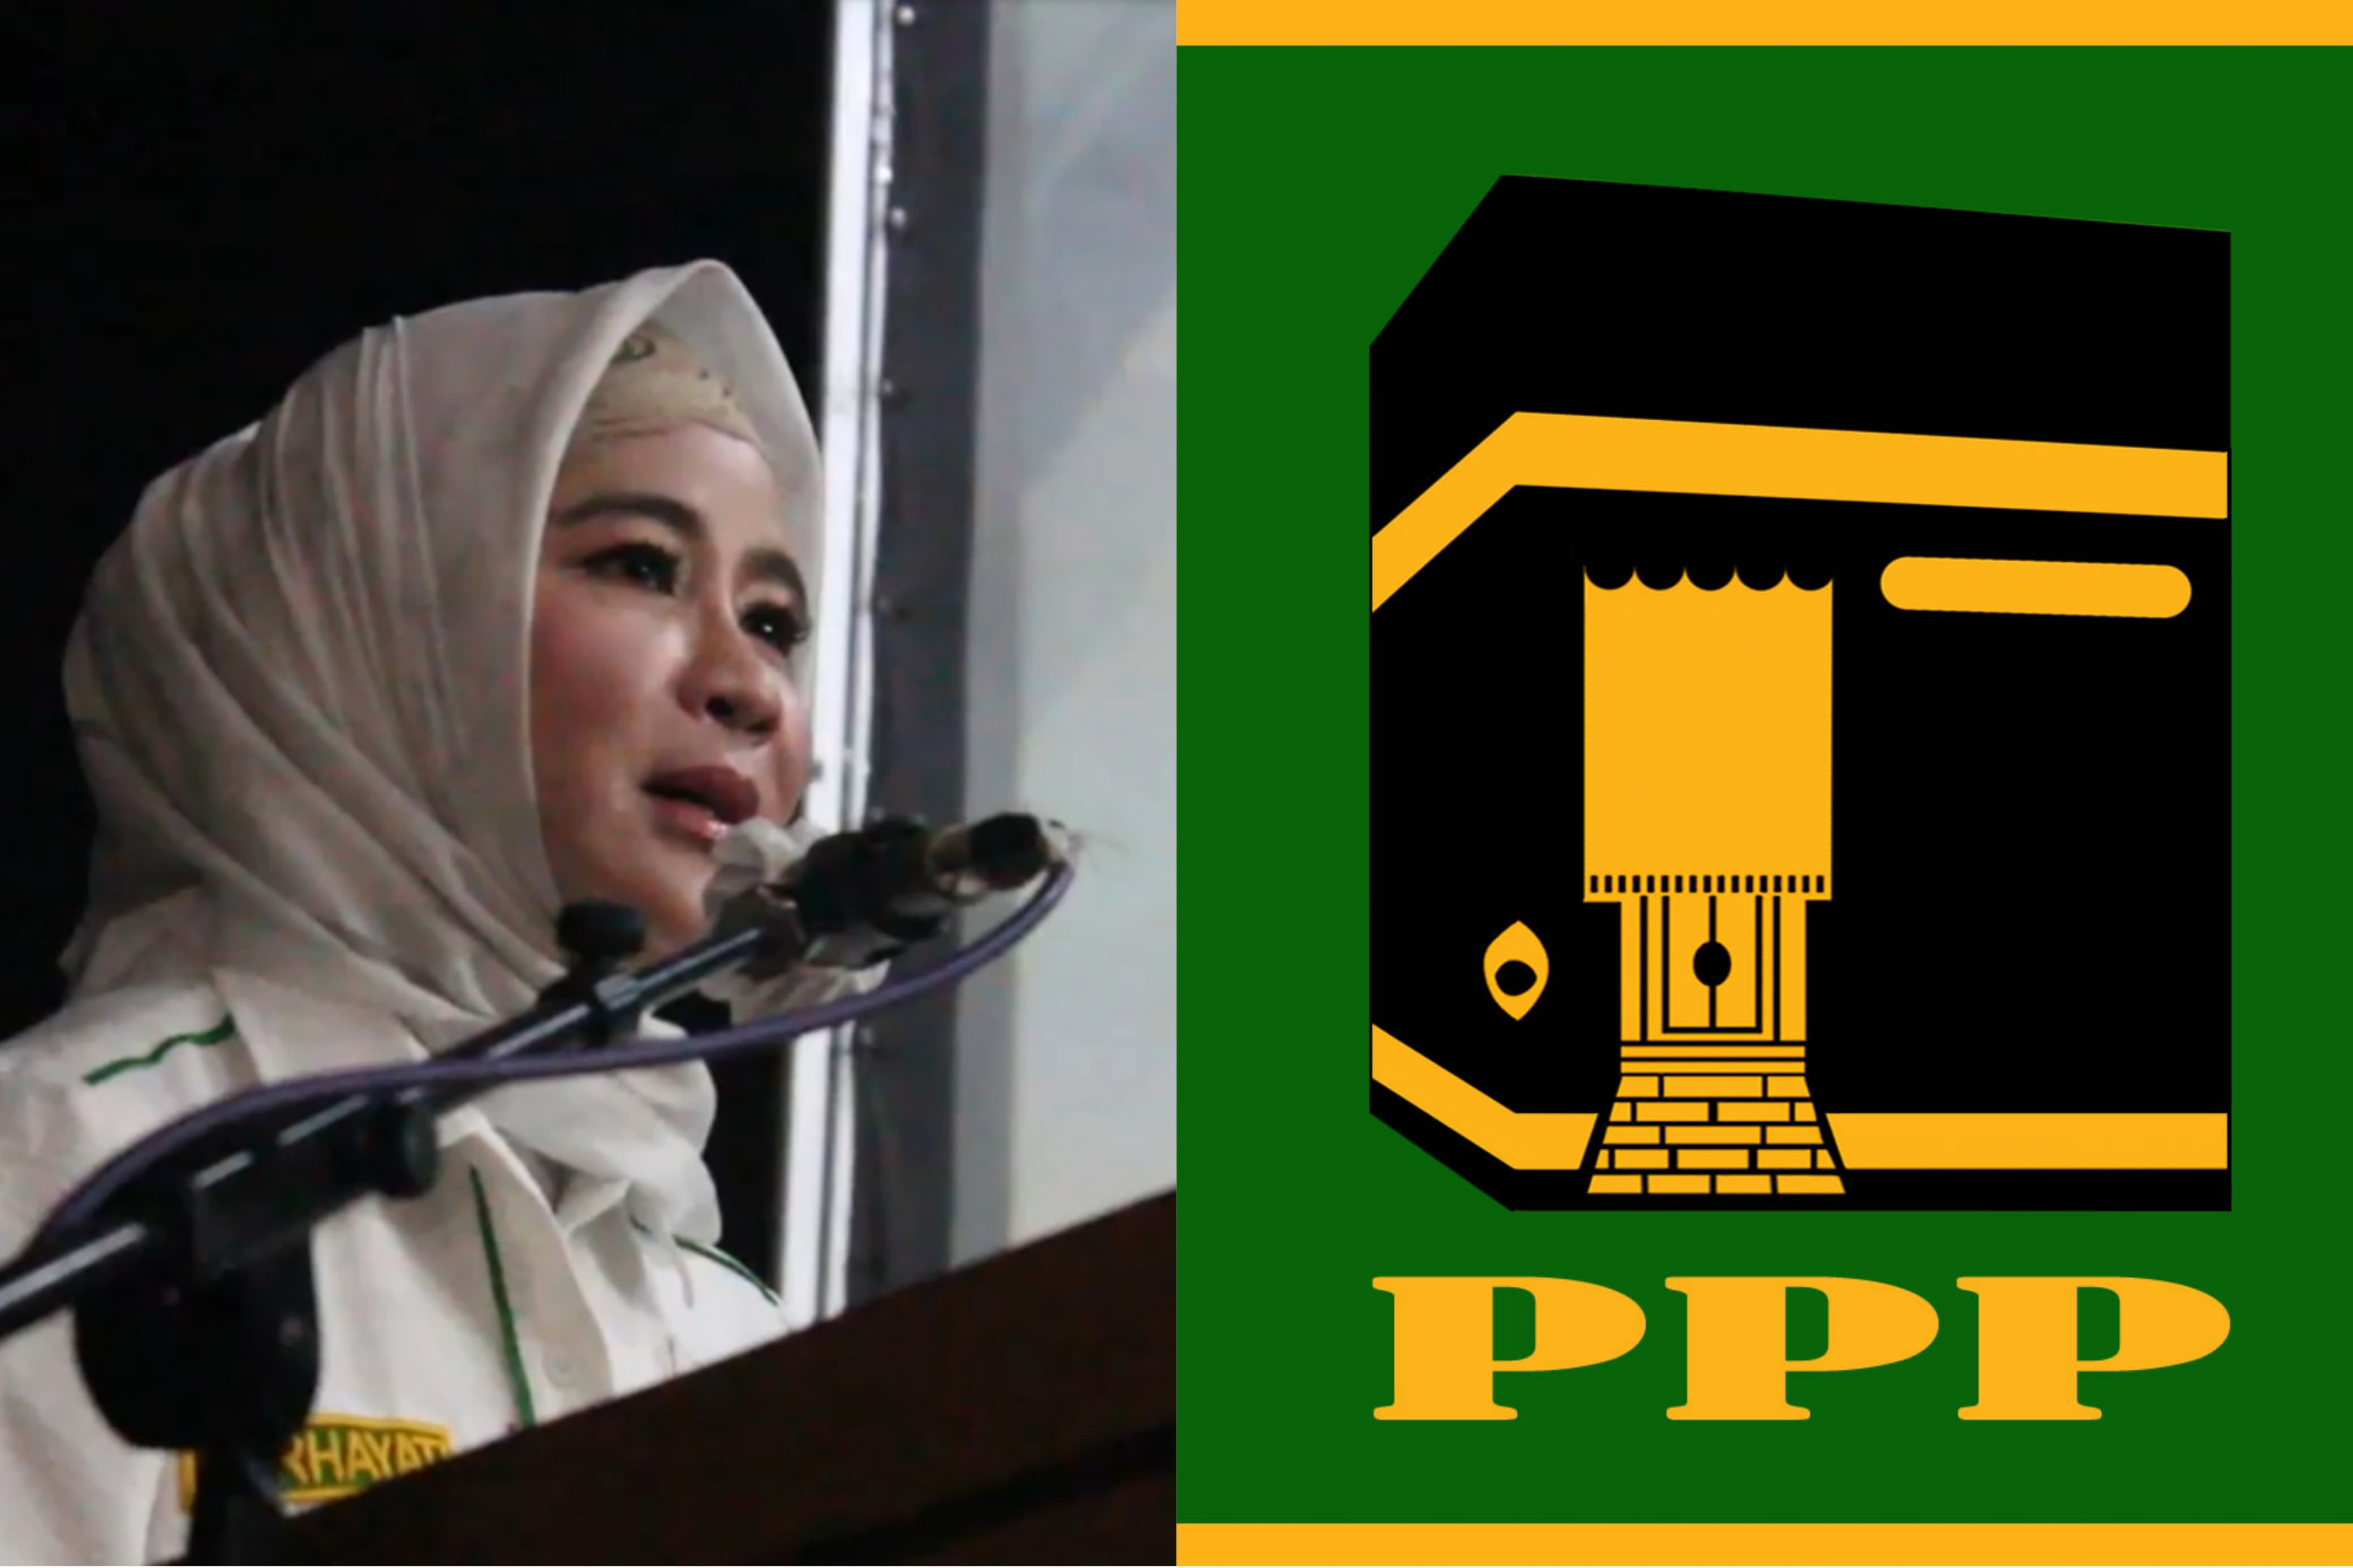 Anggota DPR RI Hj. Nurhayati Diisukan Bakal Nyalon Wali Kota Tasikmalaya, Sudah Ambil Formulir Penjaringan?